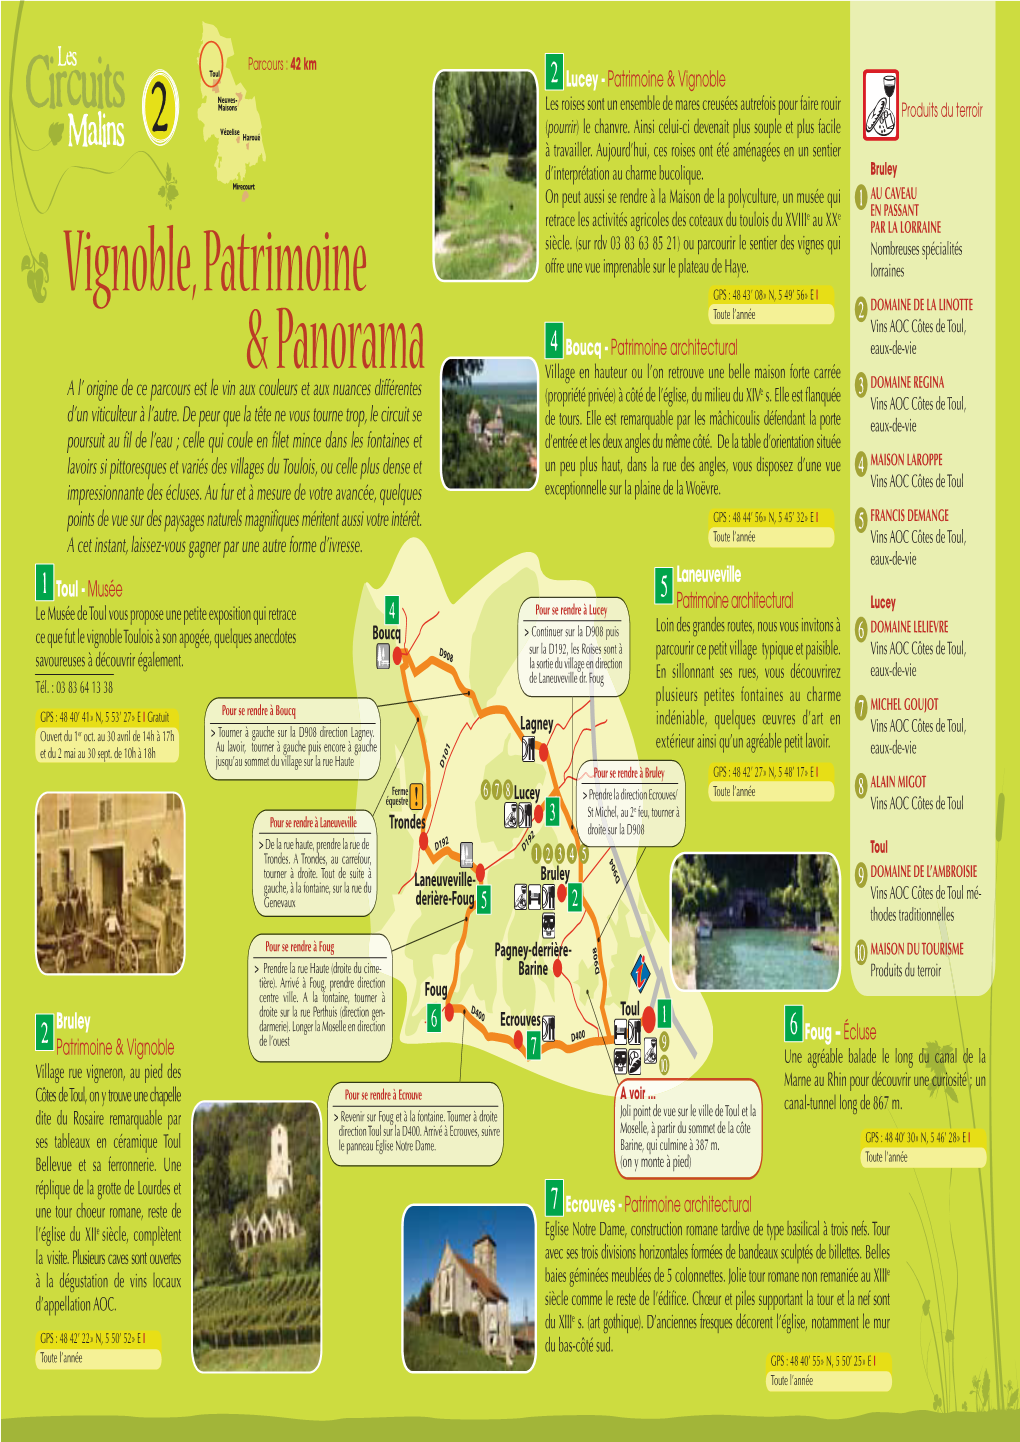 Vignoble, Patrimoine & Panorama